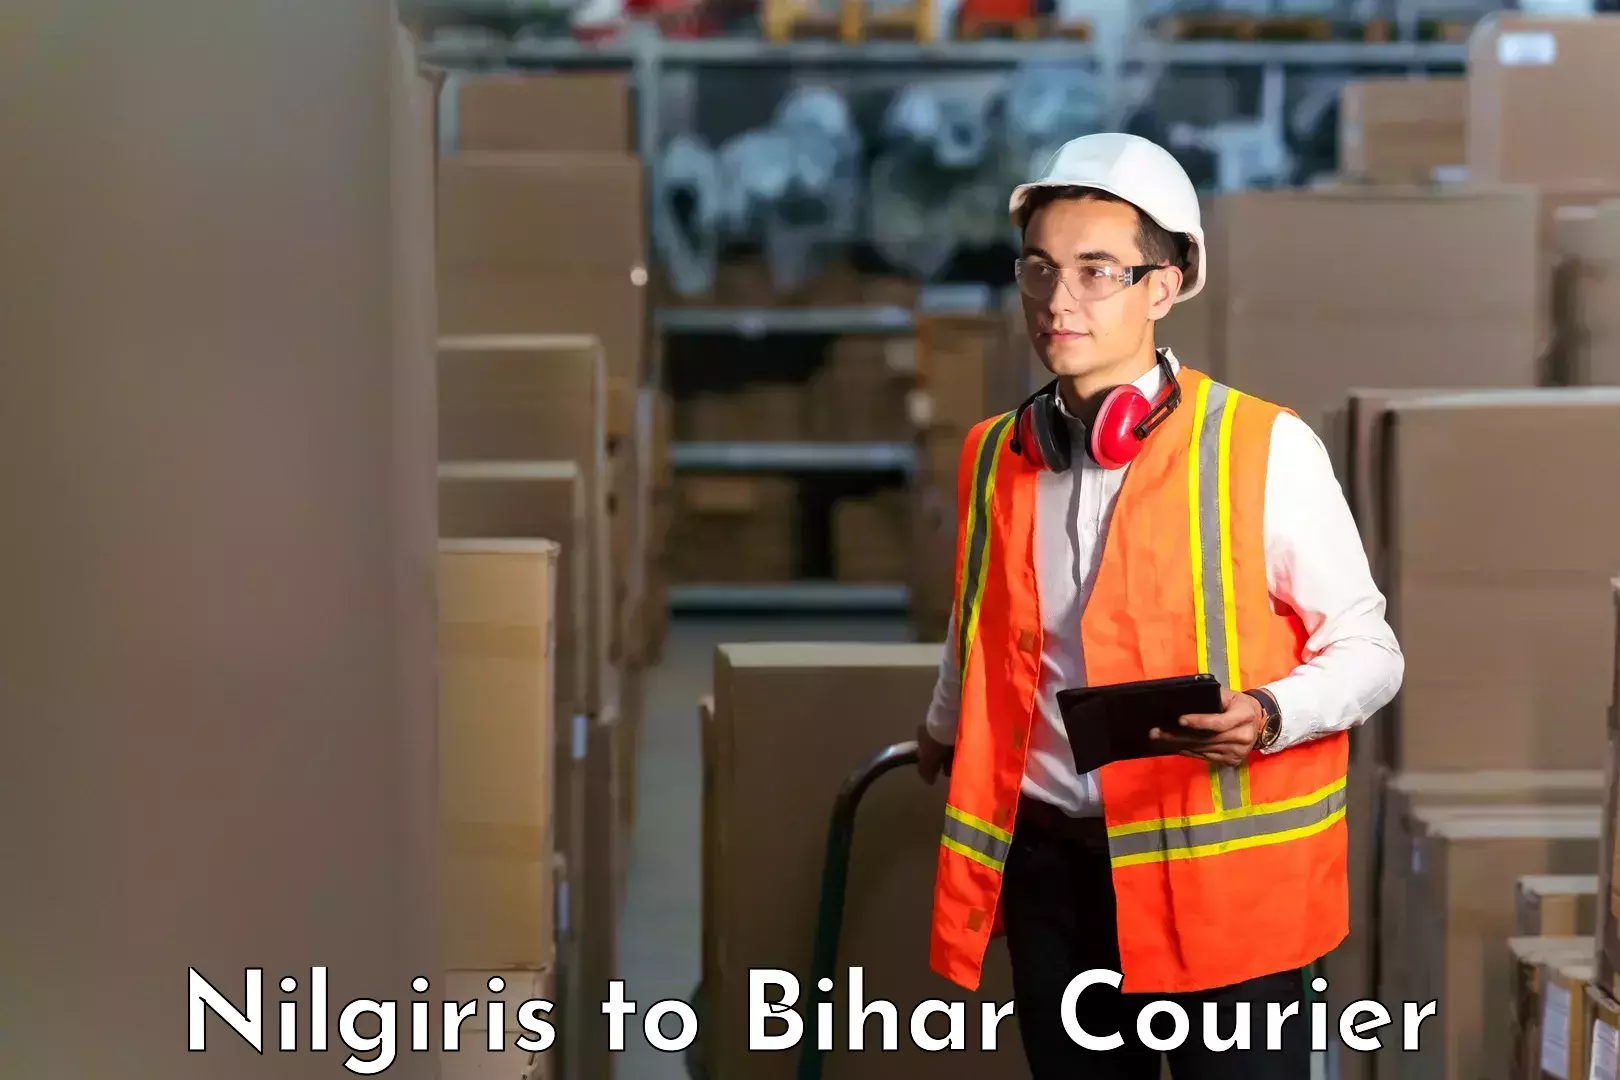 Easy access courier services Nilgiris to Bihar